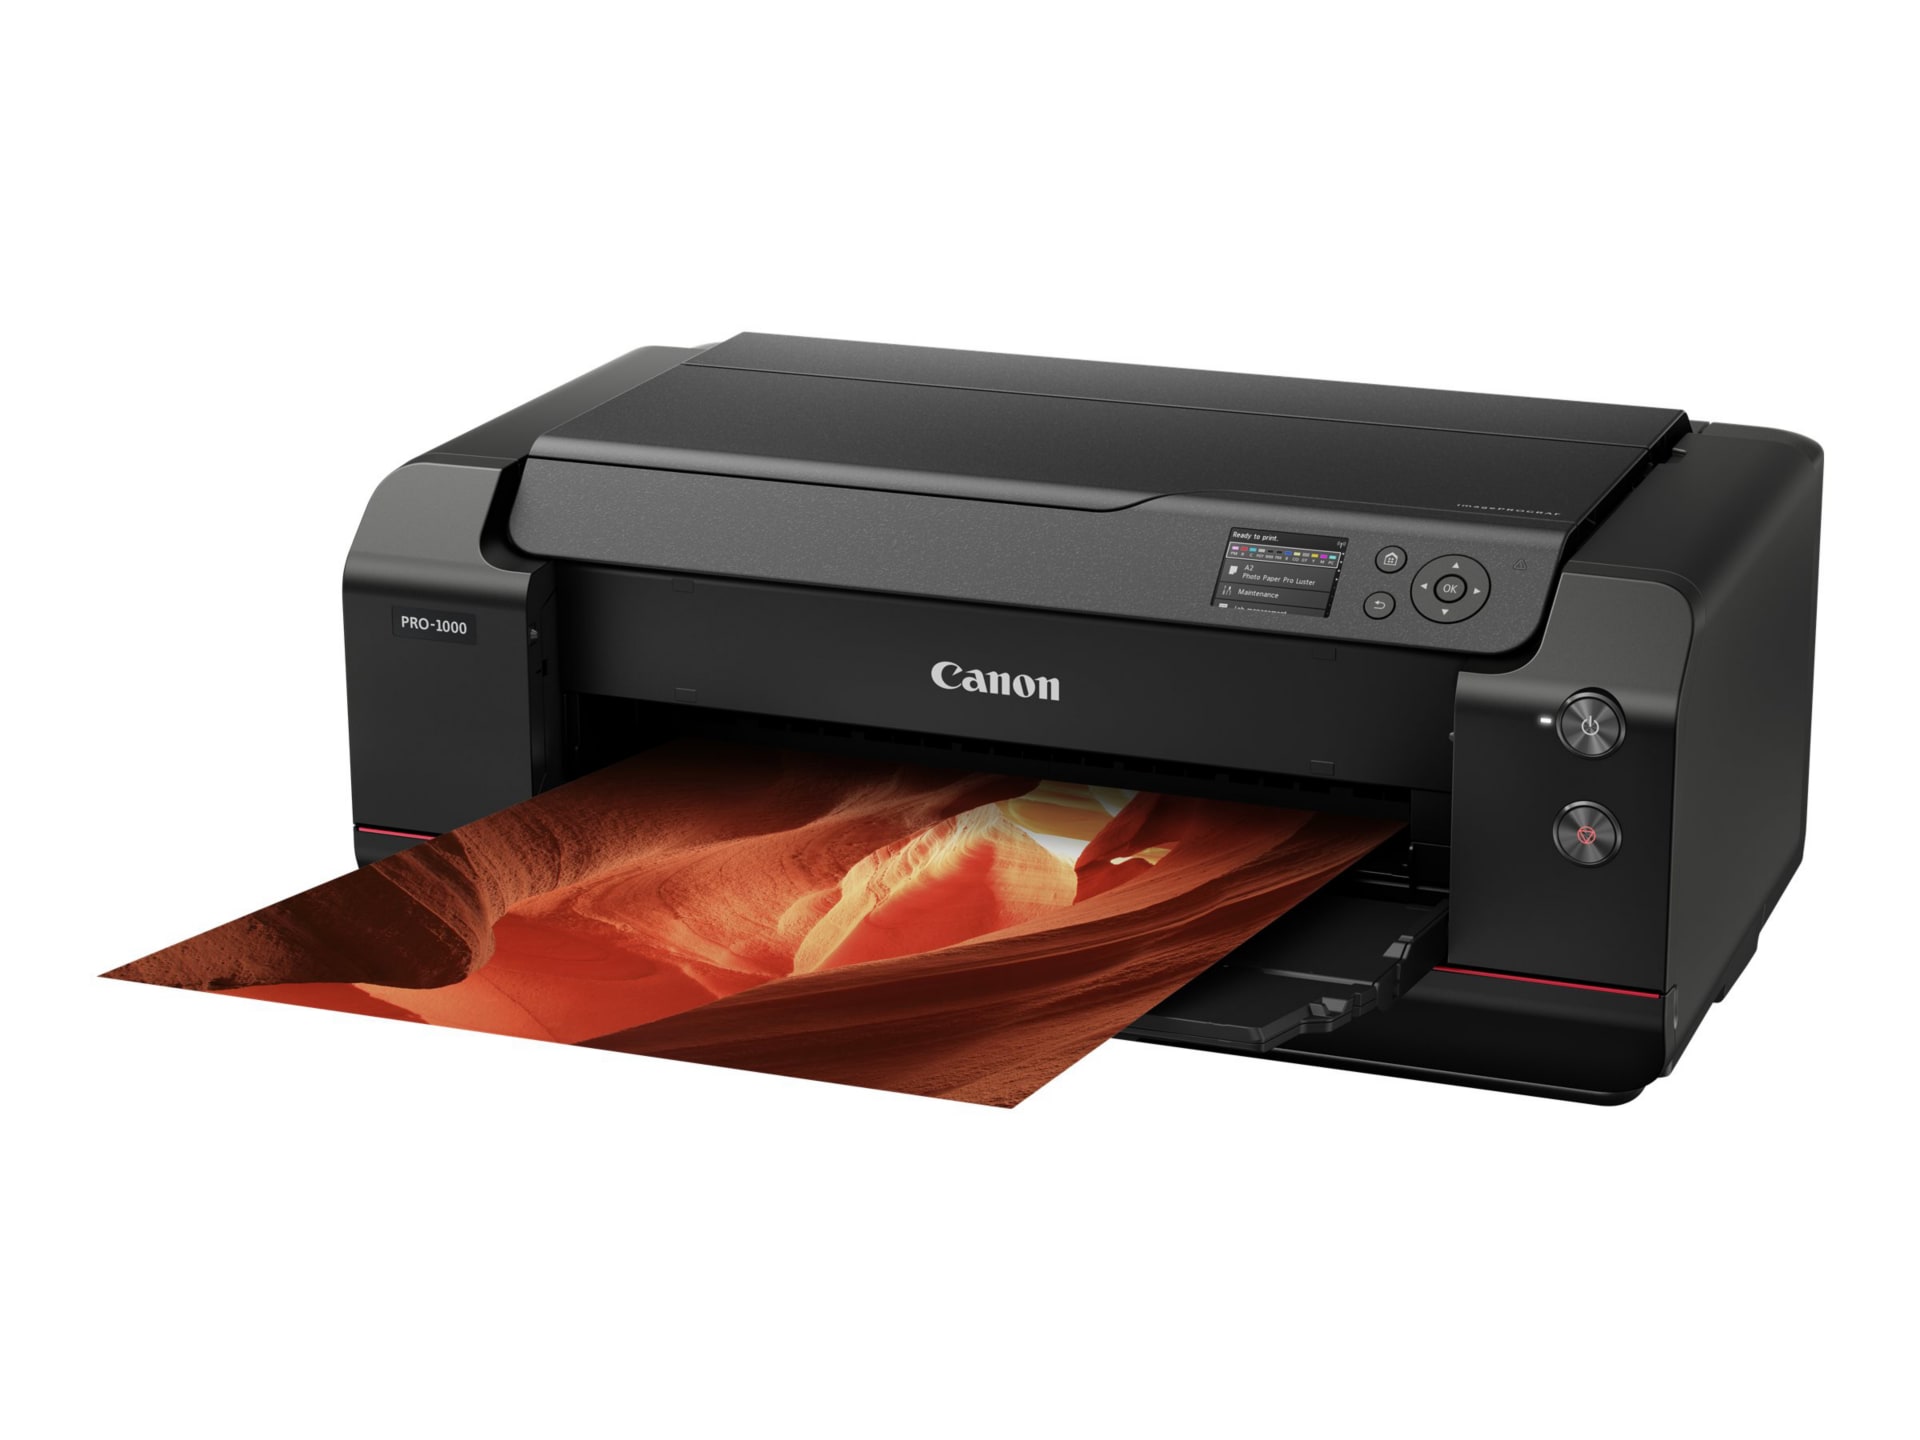 Canon imagePROGRAF PRO-1000 - large-format printer - color - ink-jet -  0608C002 - Large Format & Plotter Printers 